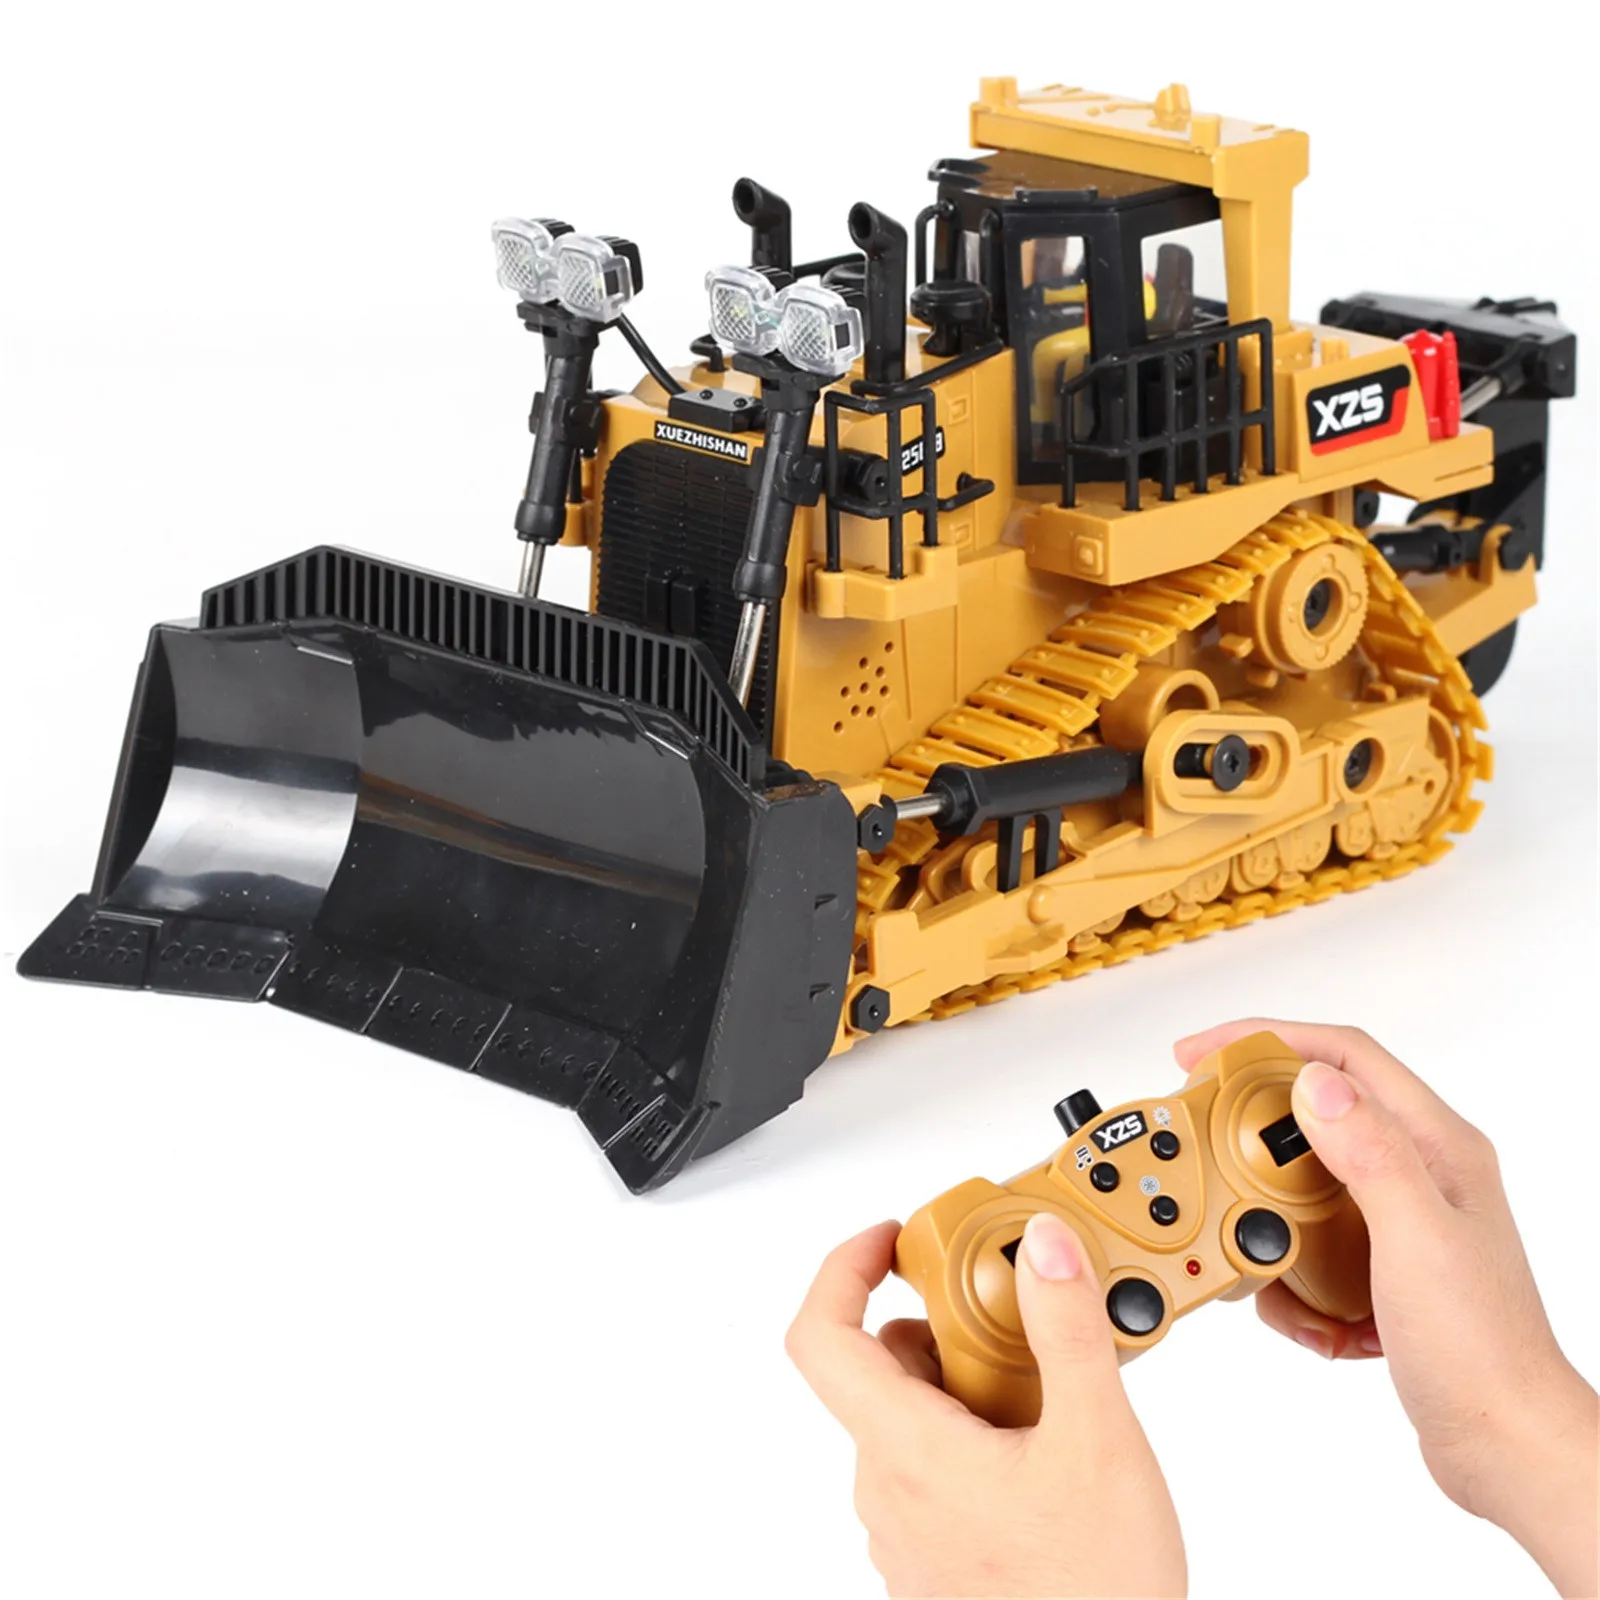 Luerme Fernbedienung Traktor Spielzeug Gro/ße Simulierte Fernbedienung Bulldozer mit Licht Sound Spielzeugauto Modell Engineering Car Toy Ausgestattet mit USB-Ladekabel und Standard-Ladeger/ät